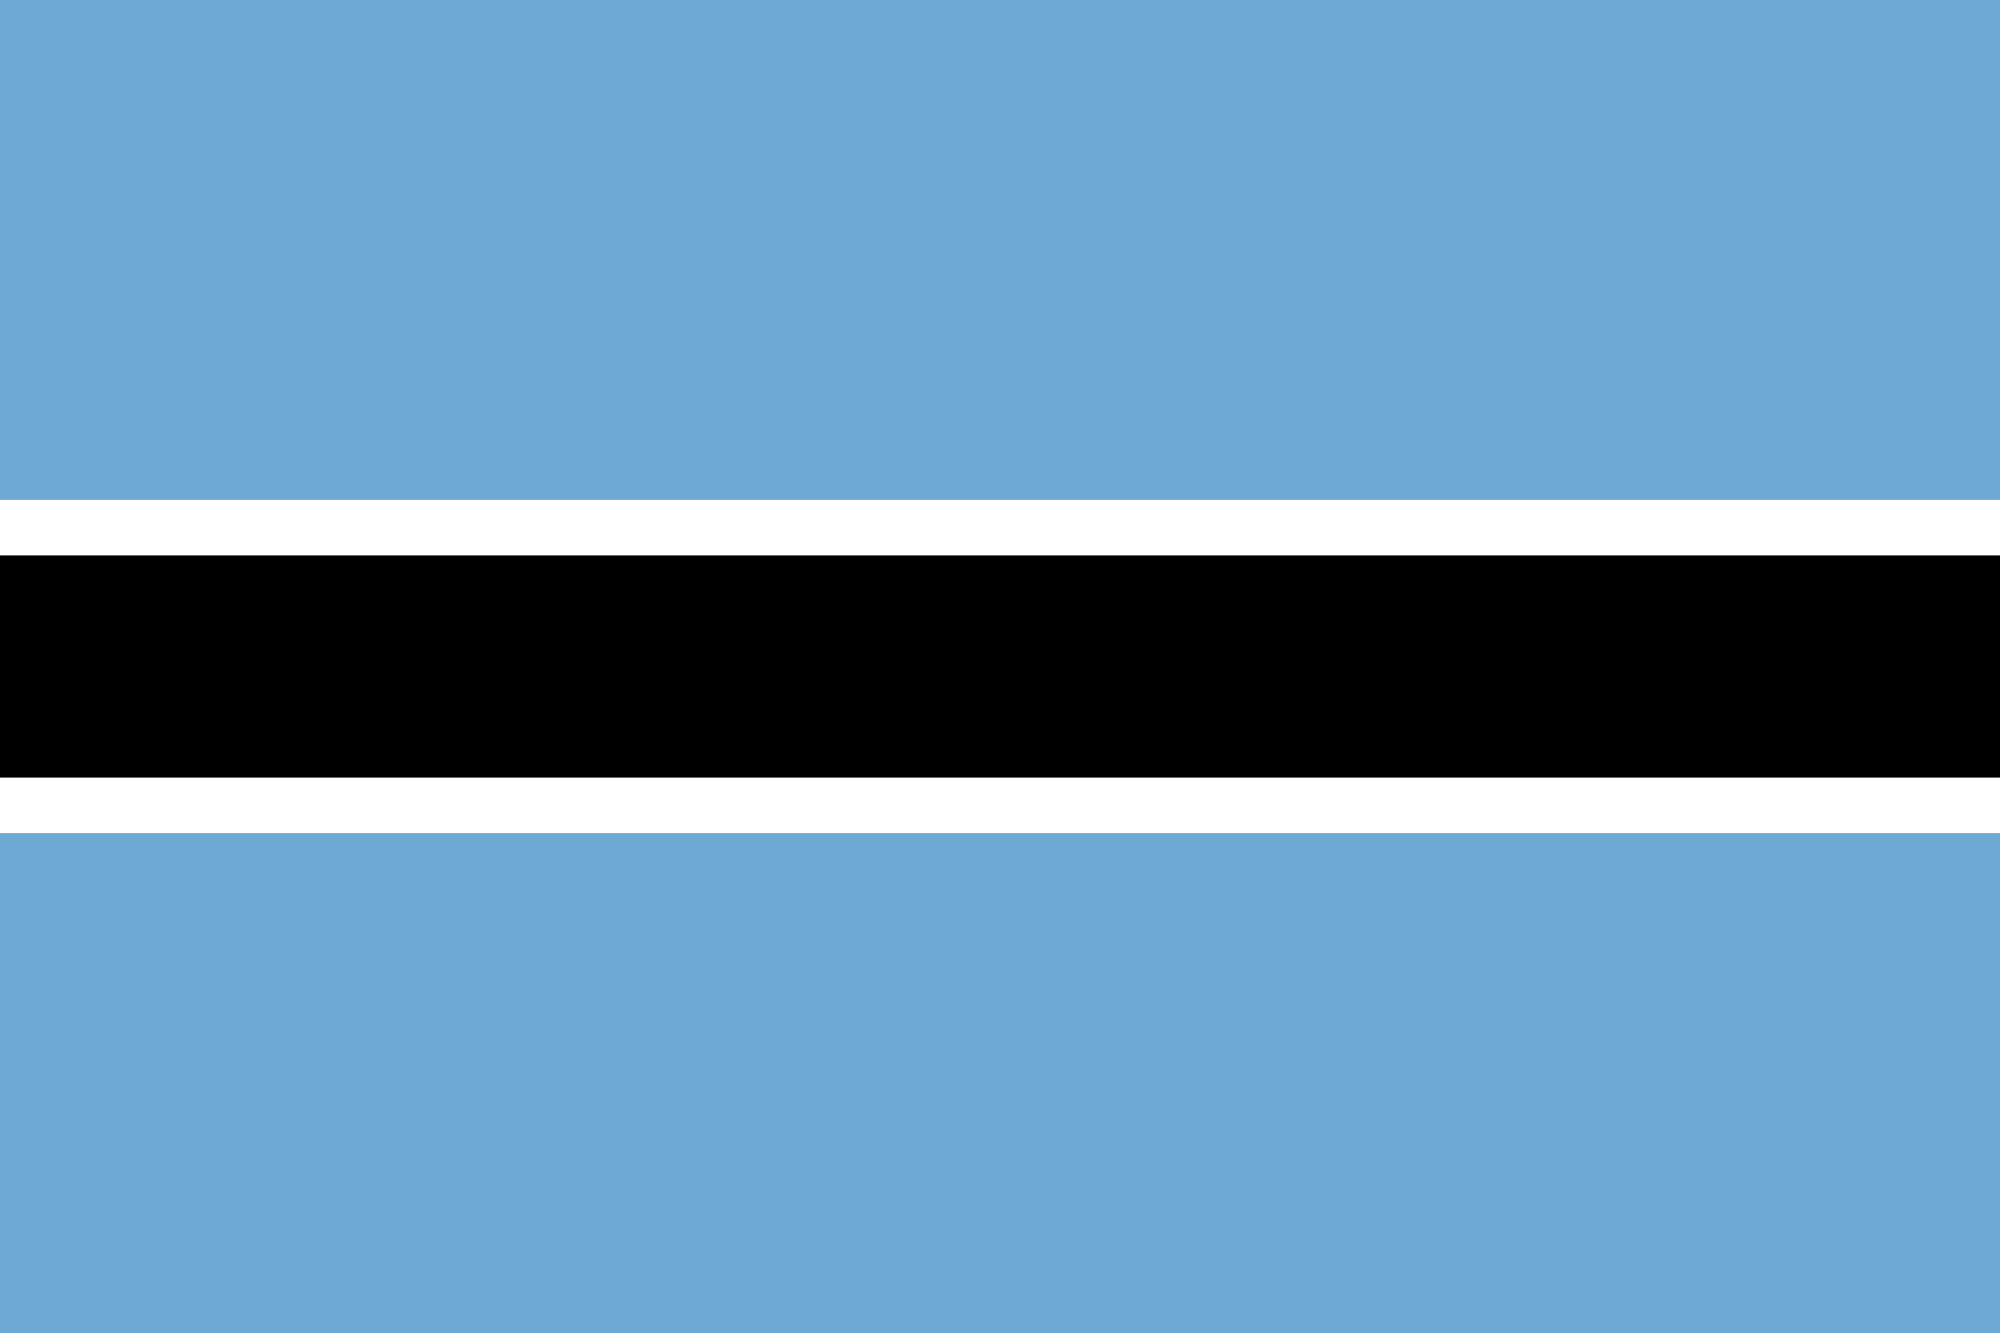 Bandera de Botsuana. Rectángulo dividido en 5 filas. Los colores de las filas, de arriba abajo, son azul, blanco, negro, blanco, azul. Las filas azules son igual de anchas y son las más anchas. Las filas blancas son igual de anchas y son las más estrechas.